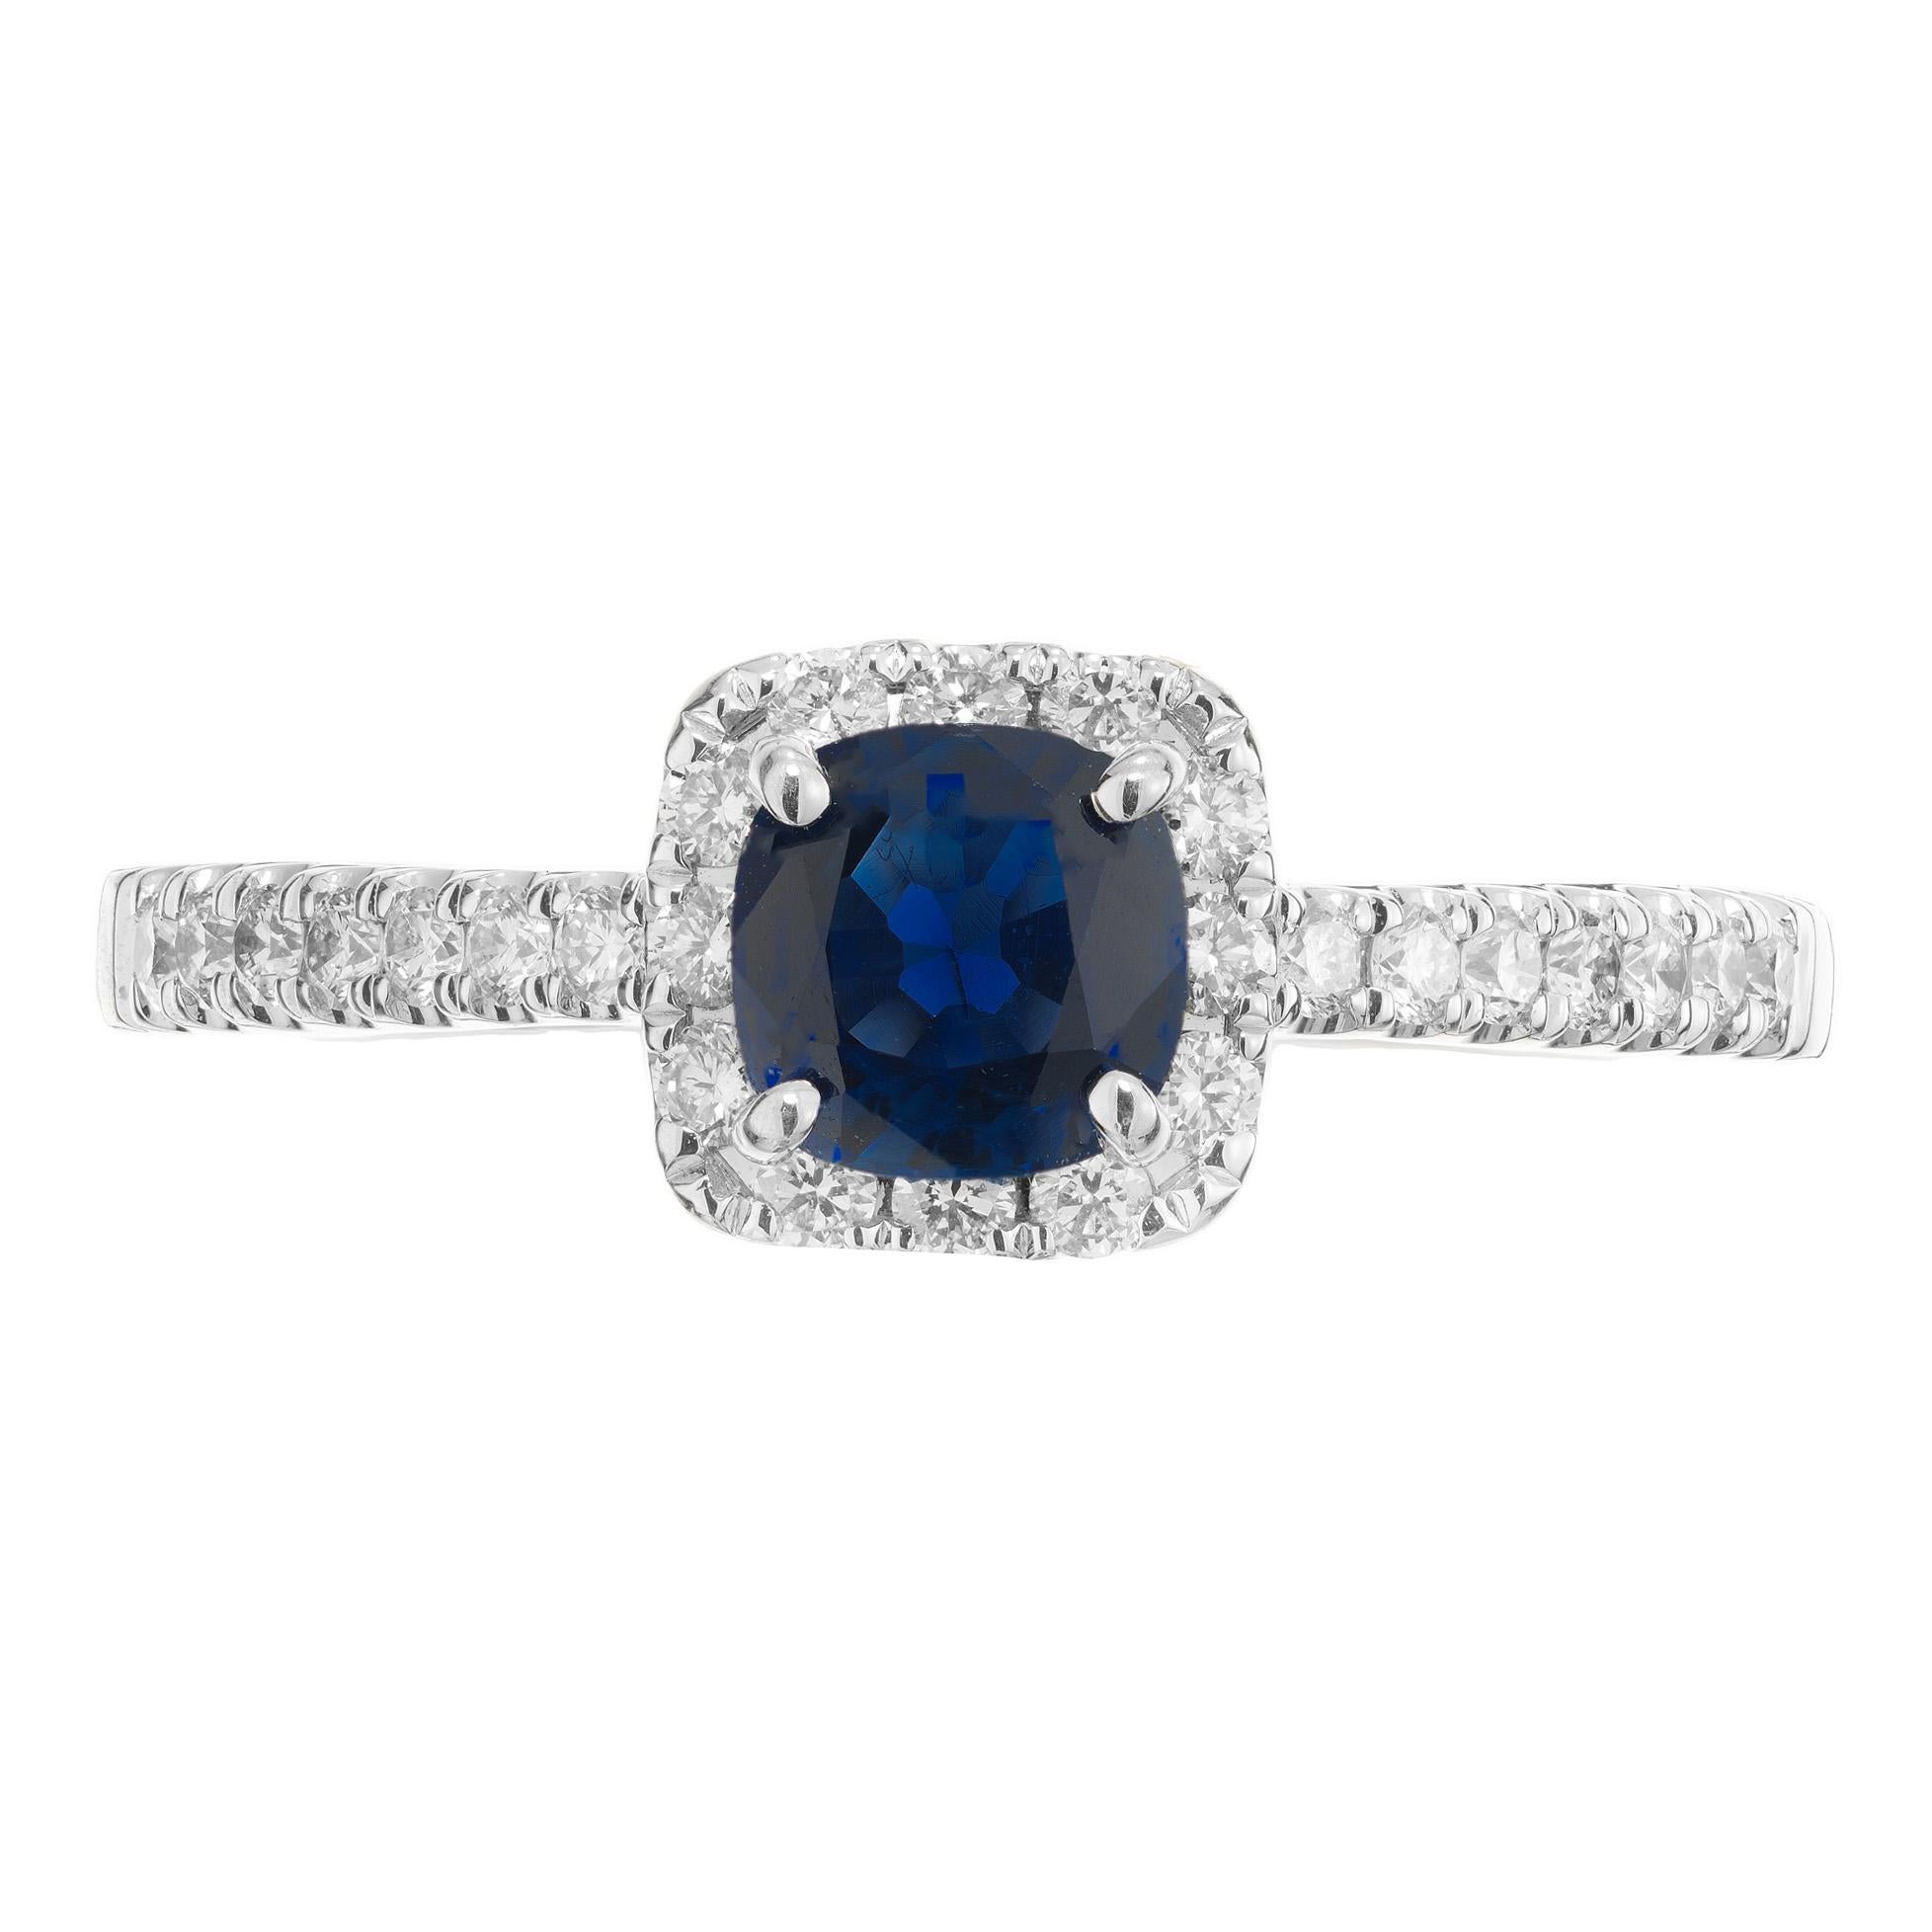 Saphir bleu à taille coussin dans une bague halo classique en or blanc 14k. Saphir bleu central de 0,77ct à taille coussin. Monté dans un halo de diamants en or blanc 14k. Chaque épaule est ornée de 7 diamants ronds de taille brillante. Fabriquée